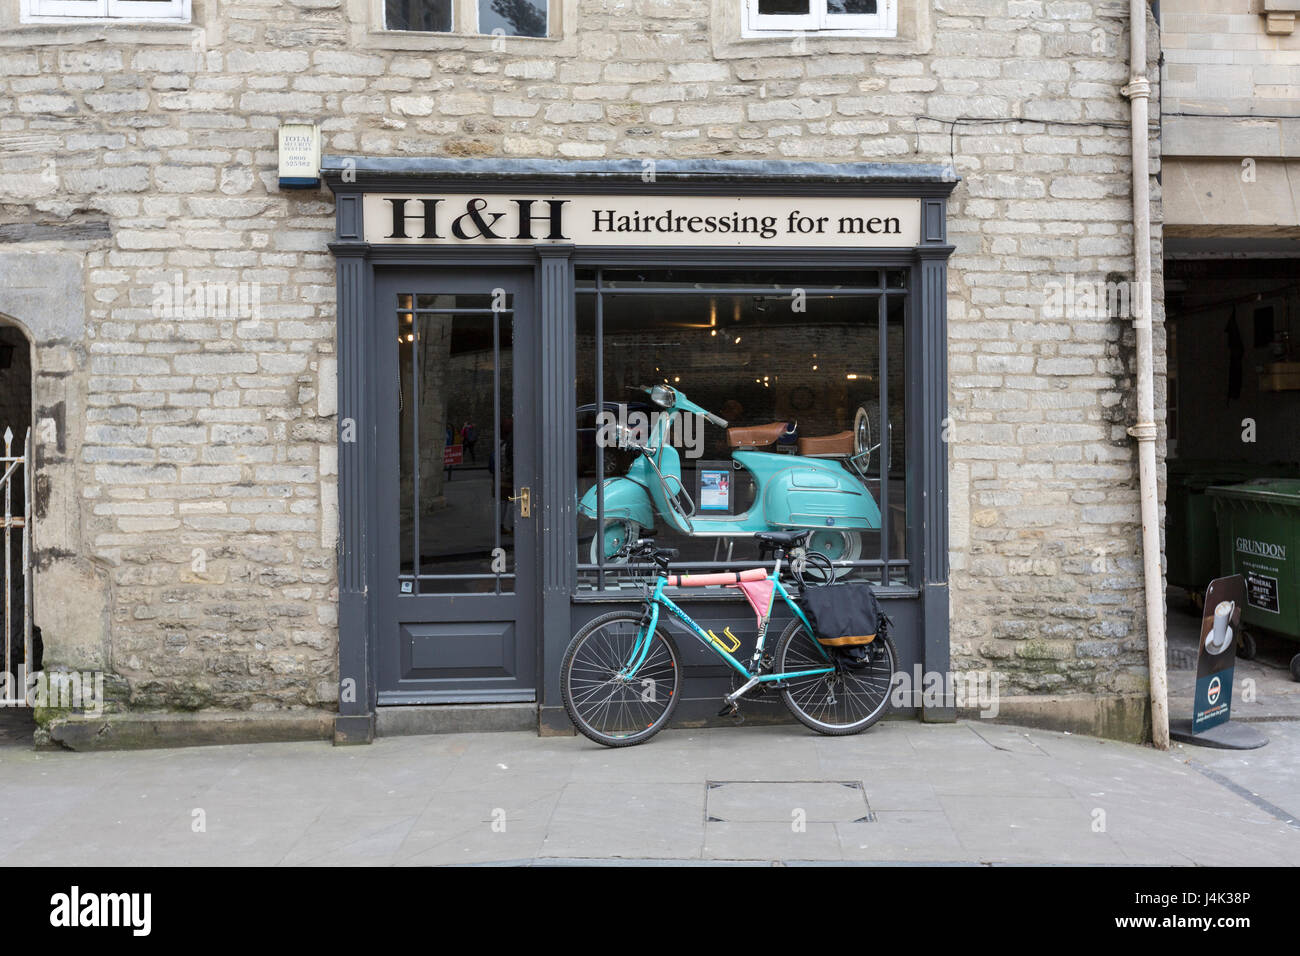 Vélo et randonnée dans le H & H la coiffure pour hommes, Castle Street, Cirencester, Gloucestershire, Angleterre Banque D'Images